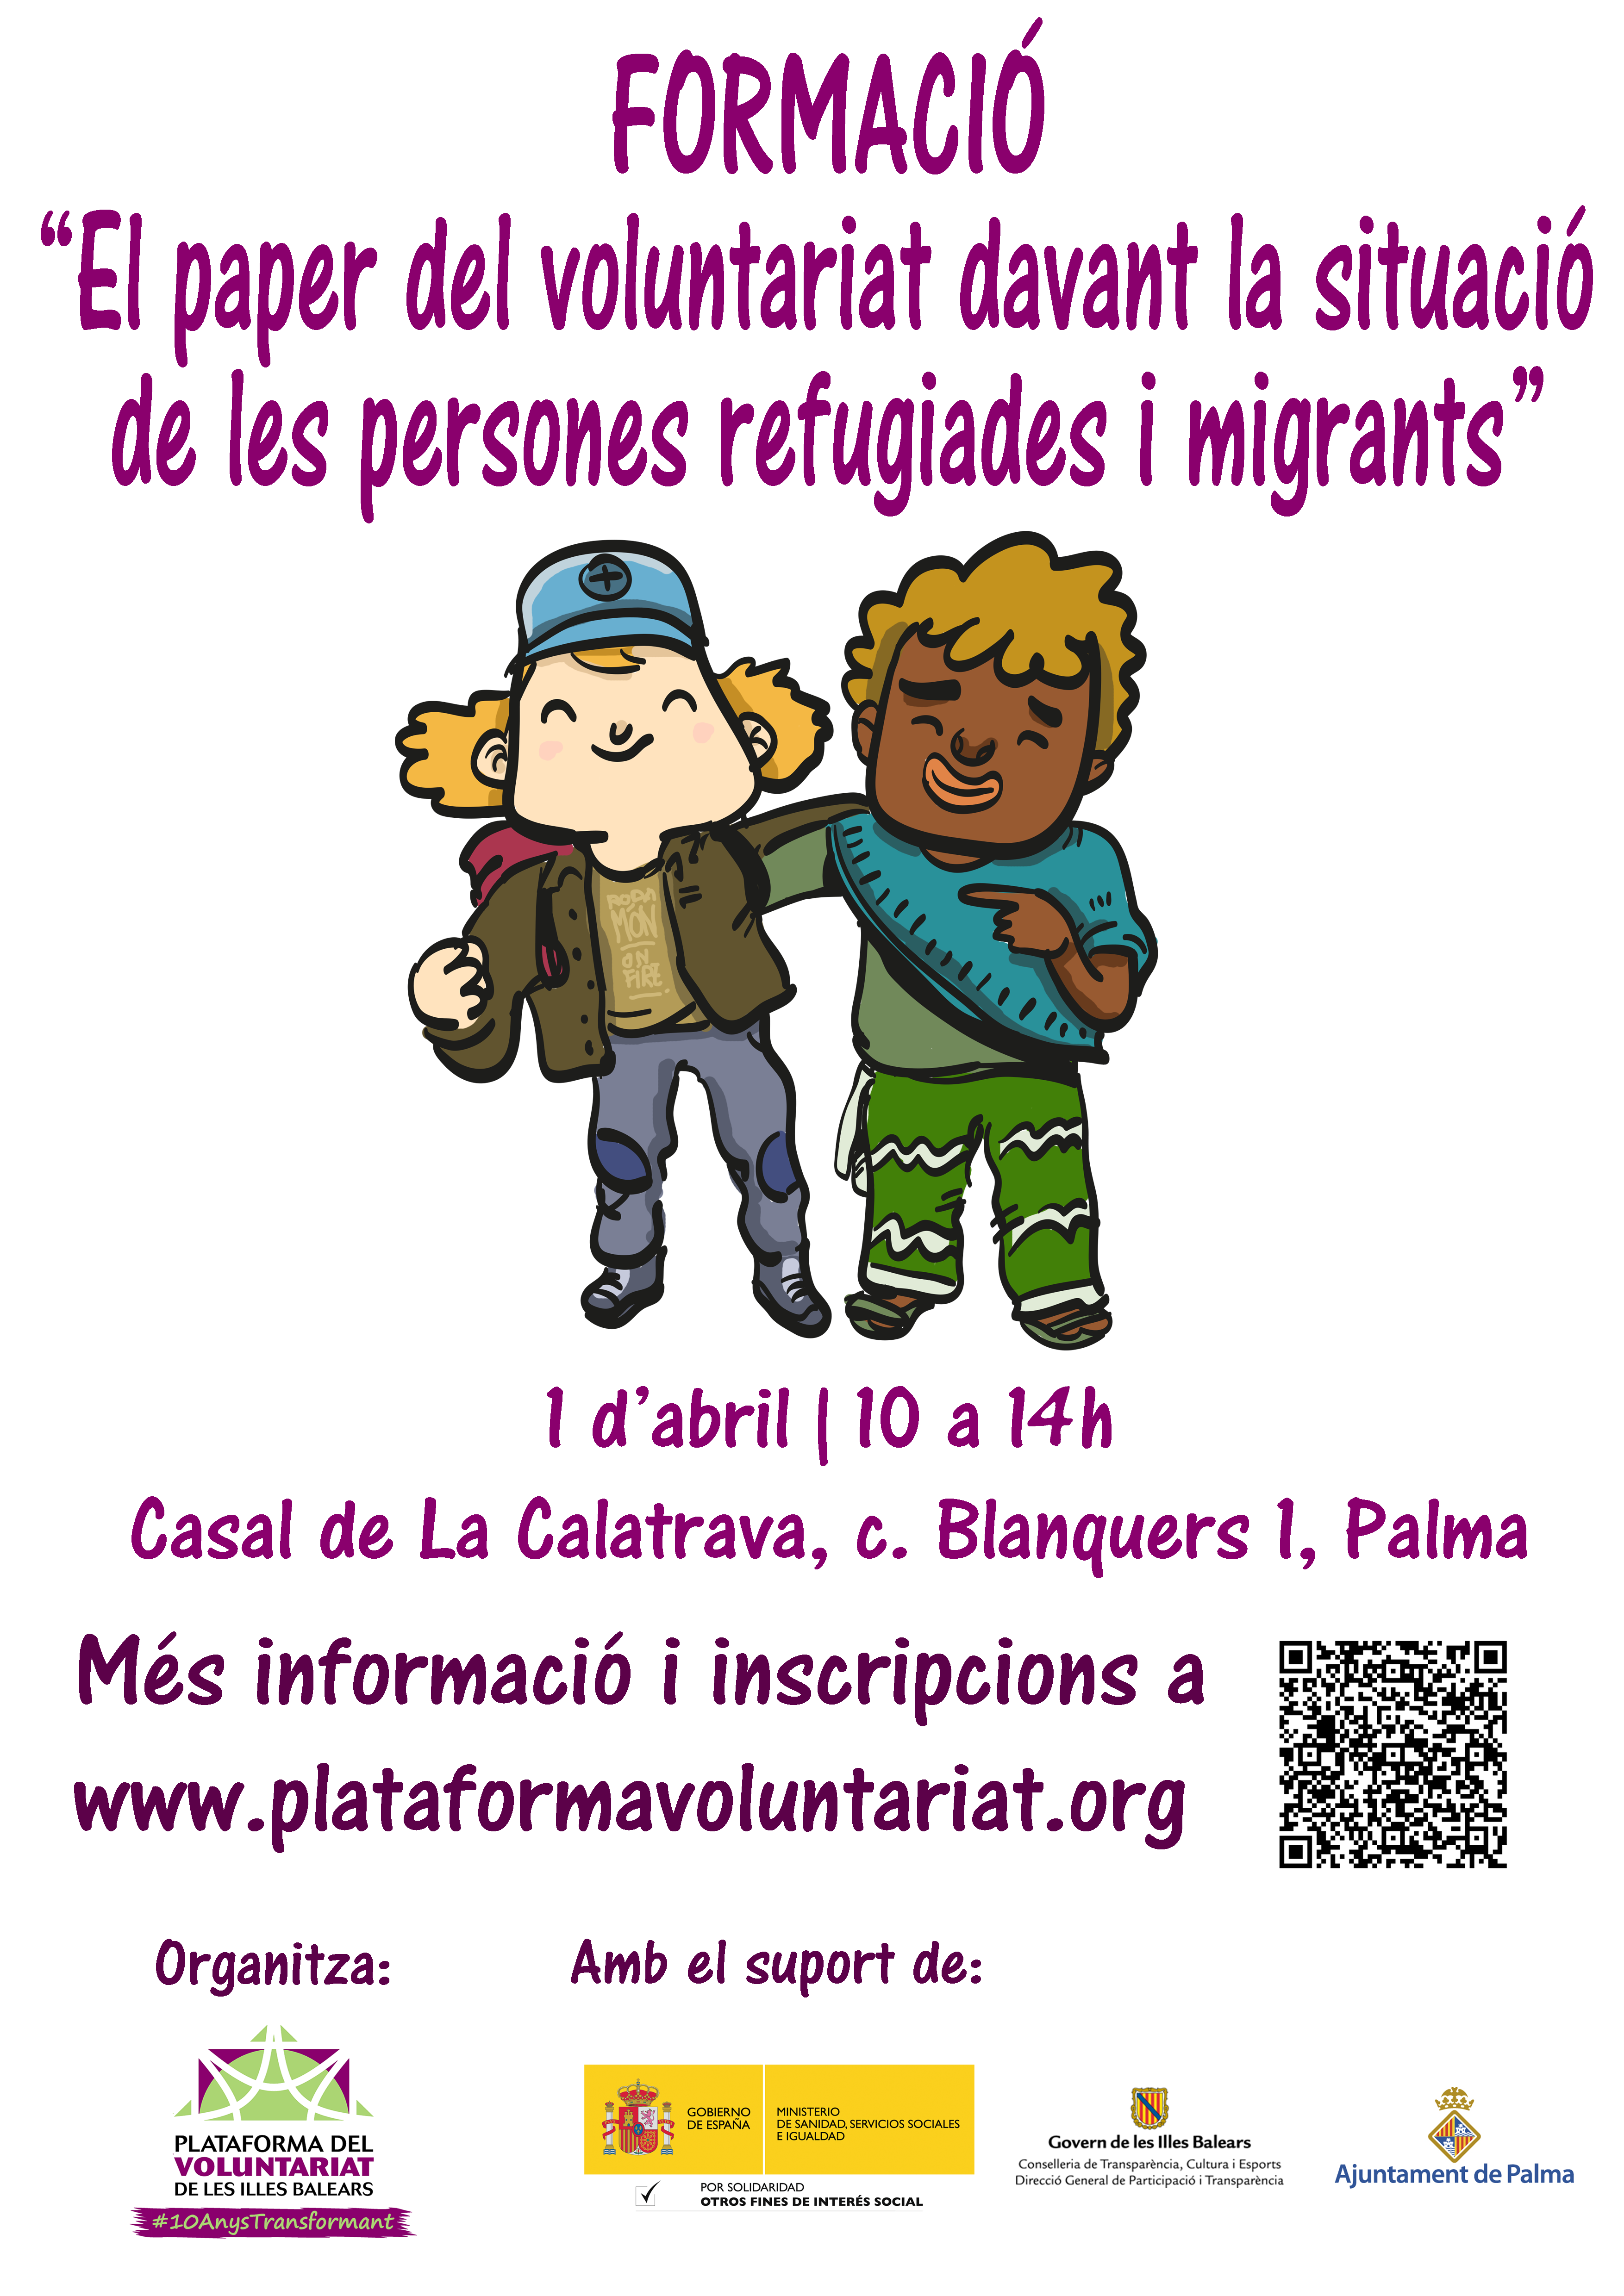 Formació Específica “El paper del voluntariat davant la situació de les persones refugiades i migrants”